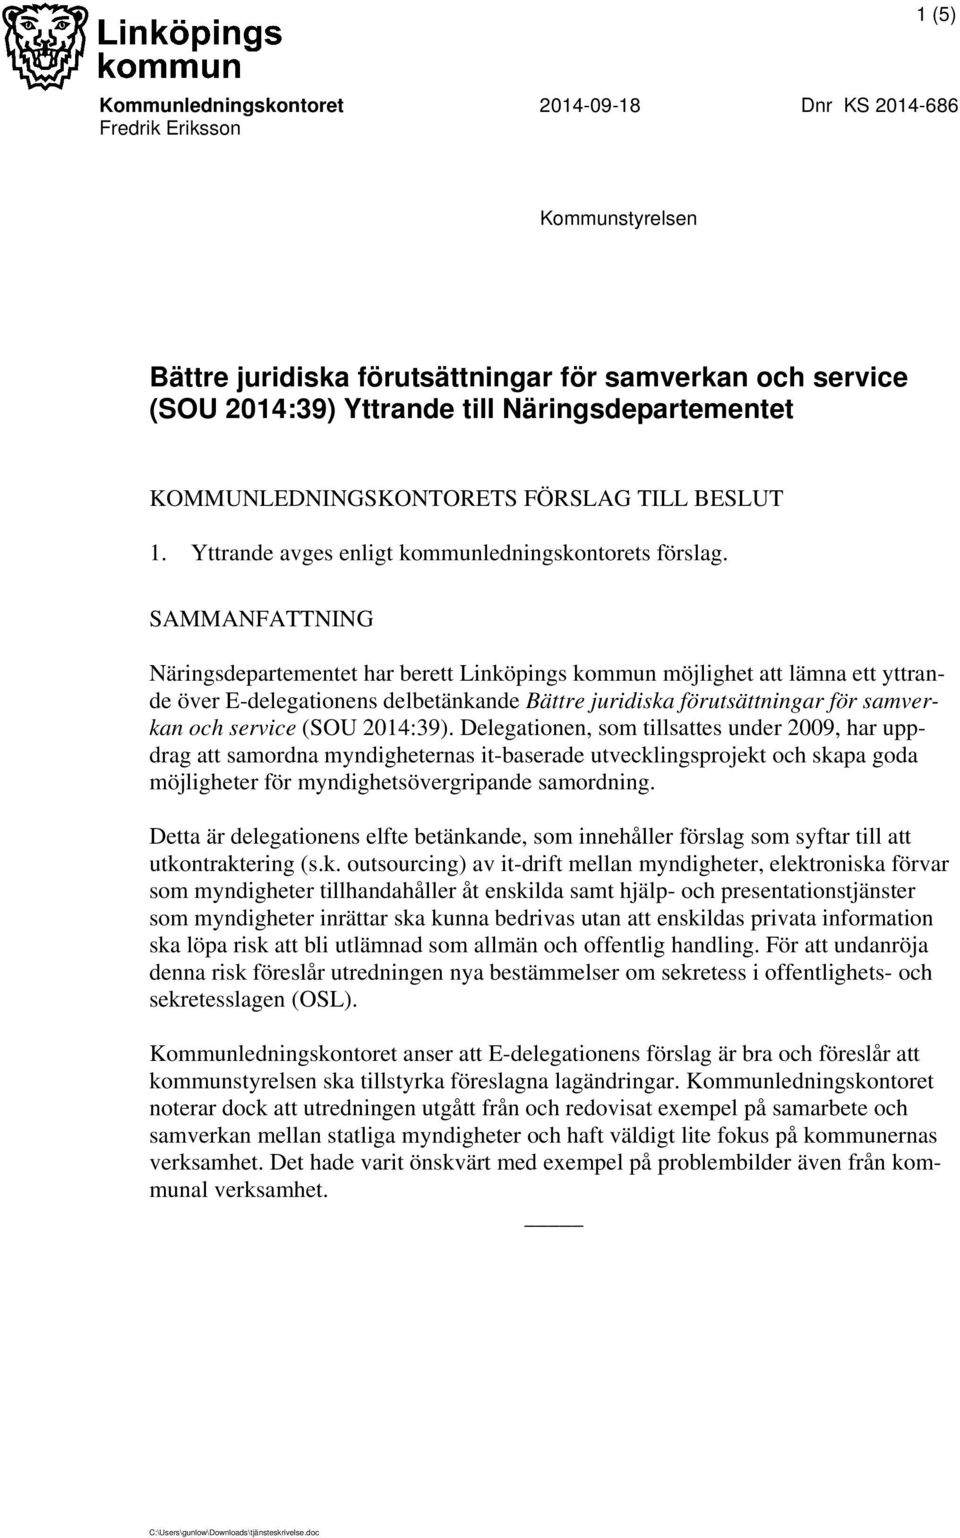 SAMMANFATTNING Näringsdepartementet har berett Linköpings kommun möjlighet att lämna ett yttrande över E-delegationens delbetänkande Bättre juridiska förutsättningar för samverkan och service (SOU